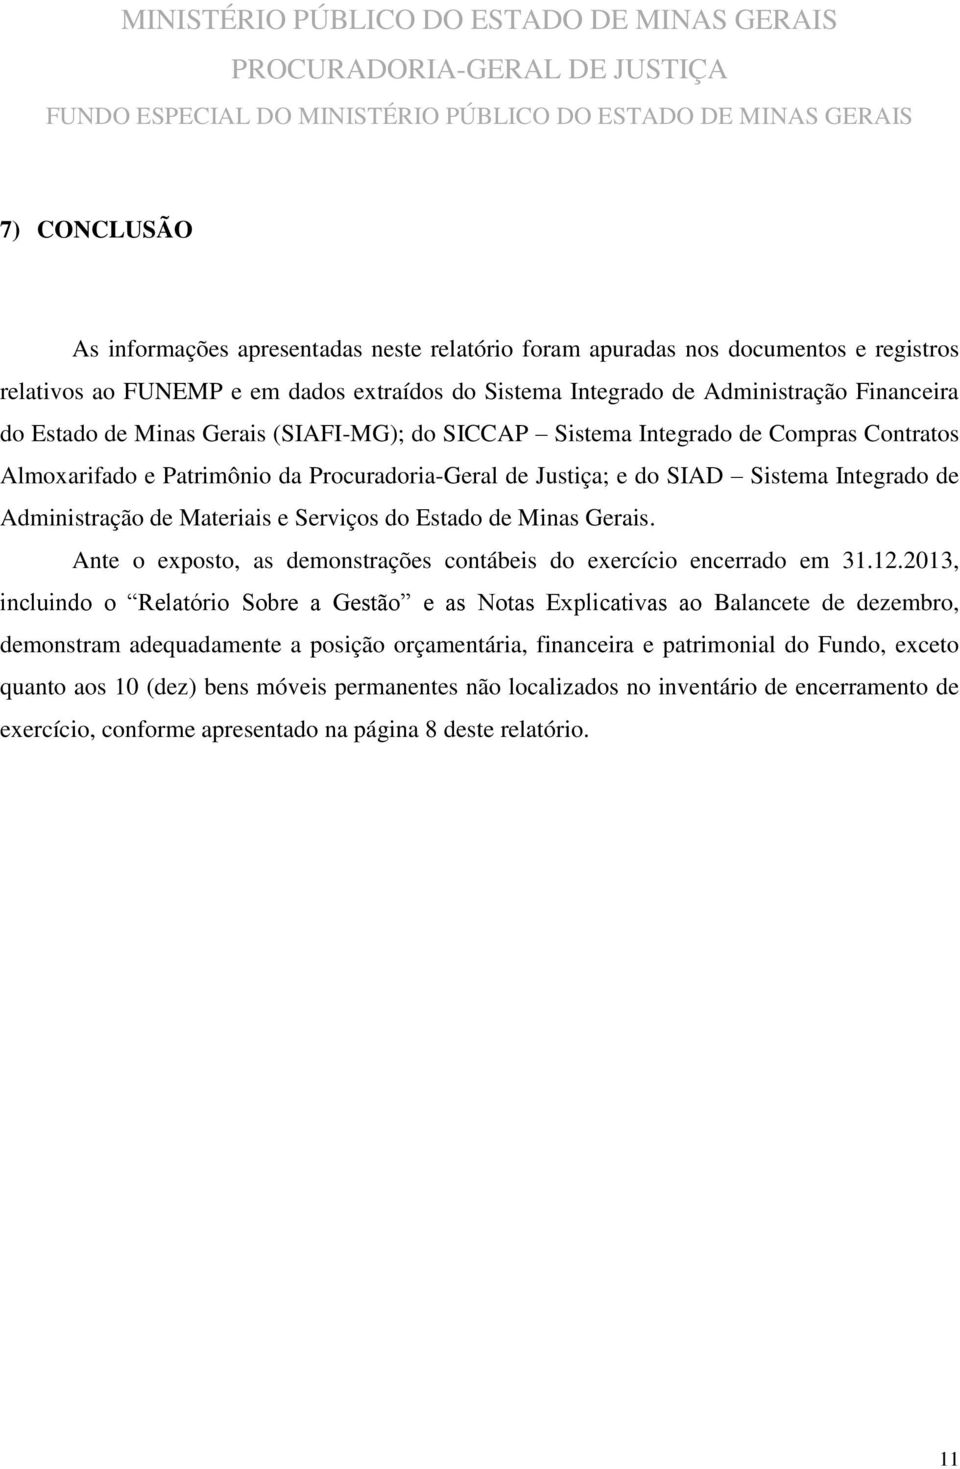 Serviços do Estado de Minas Gerais. Ante o exposto, as demonstrações contábeis do exercício encerrado em 31.12.